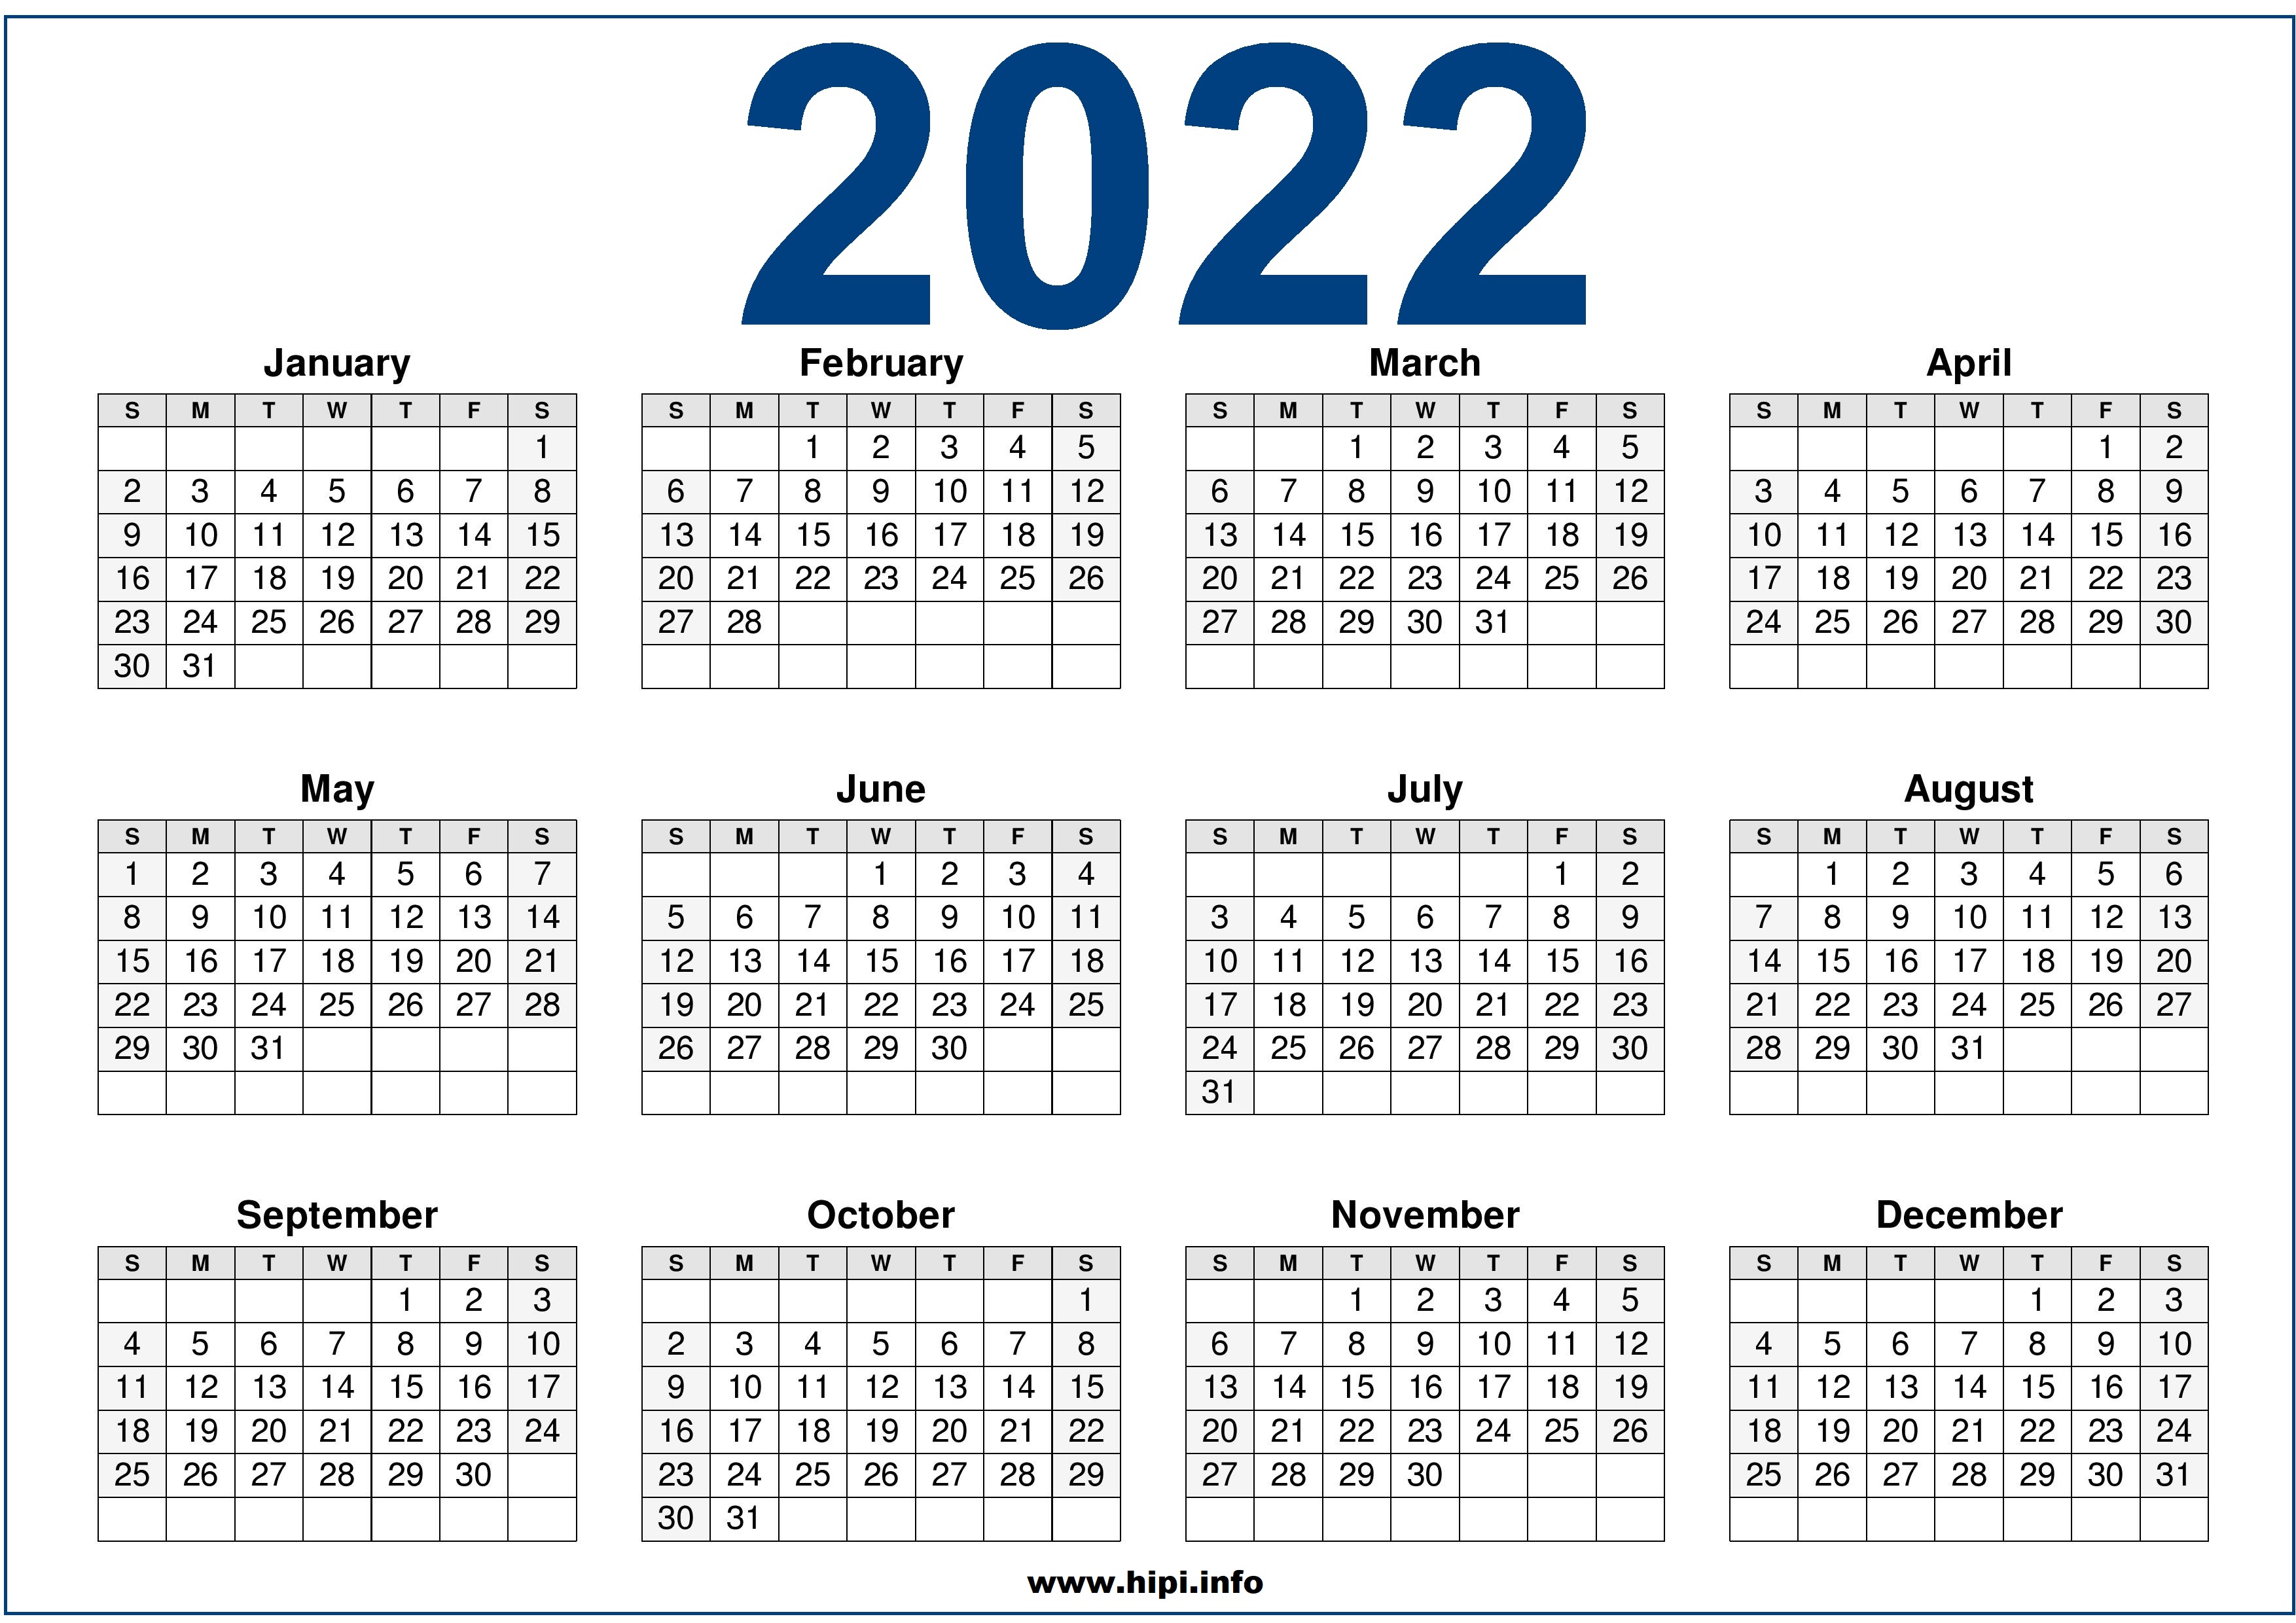 Free Desktop Calendar 2022 2022 Calendar Printable Us One Page - Hipi.info | Calendars Printable Free